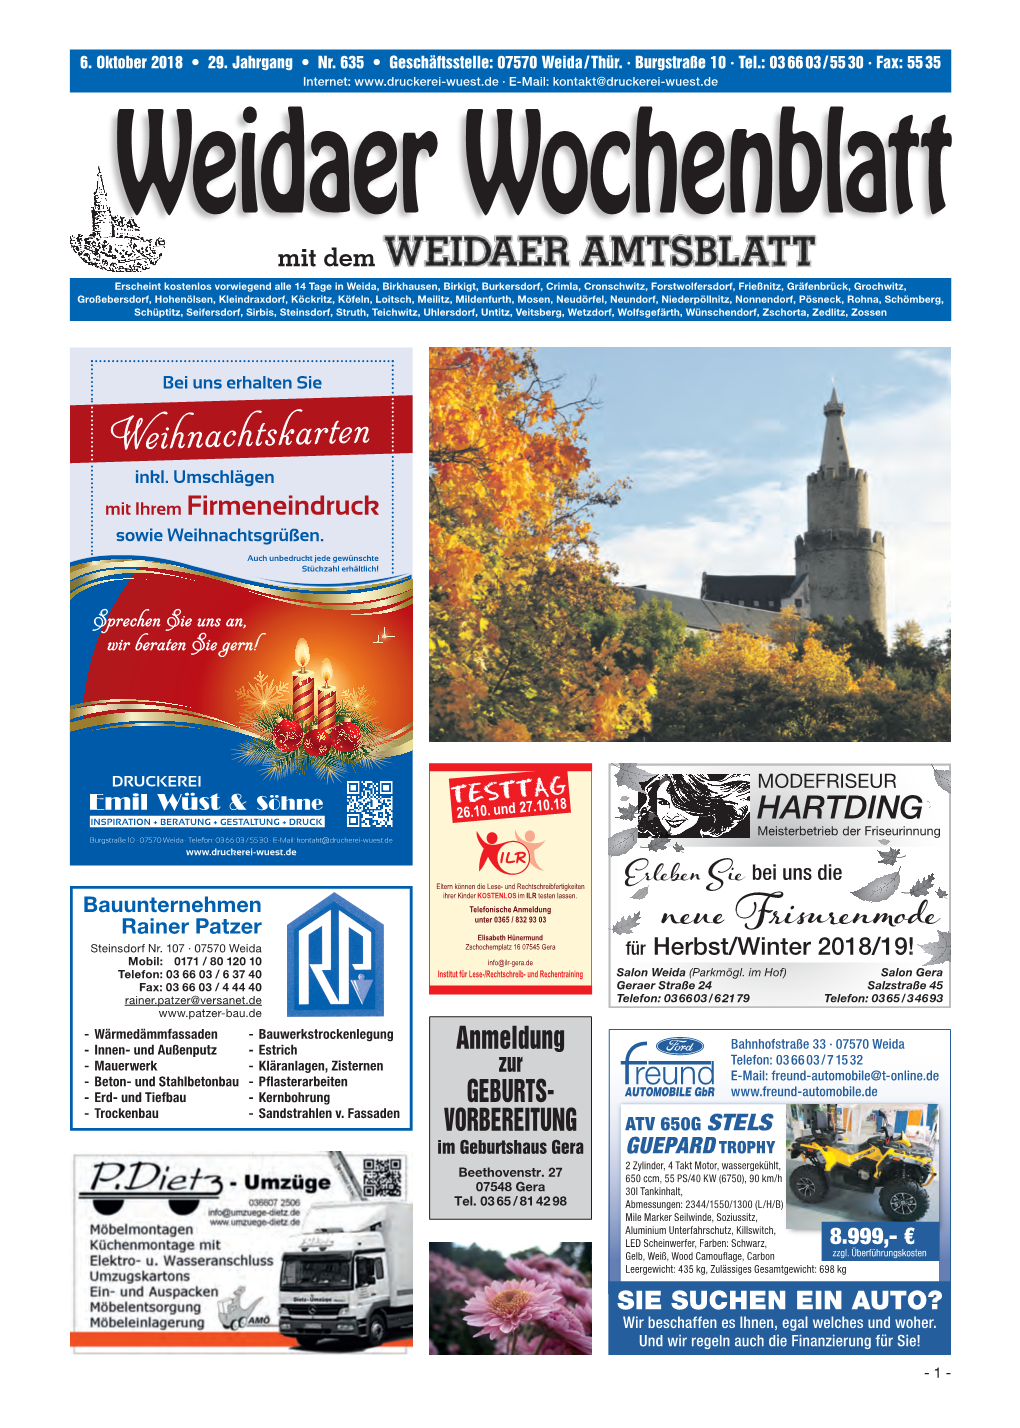 Weidaer-Wochenblatt-635.Pdf